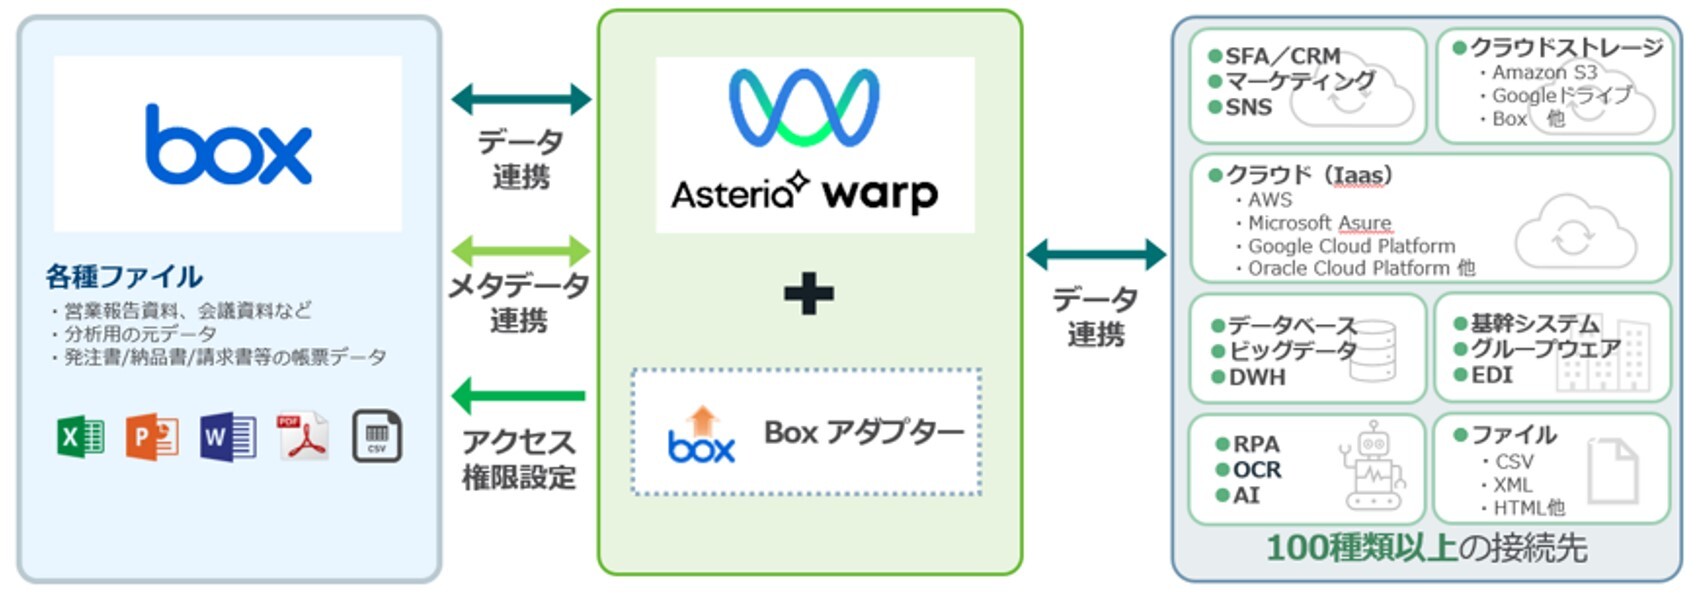 BoxとASTERIA Warpの連携イメージ図